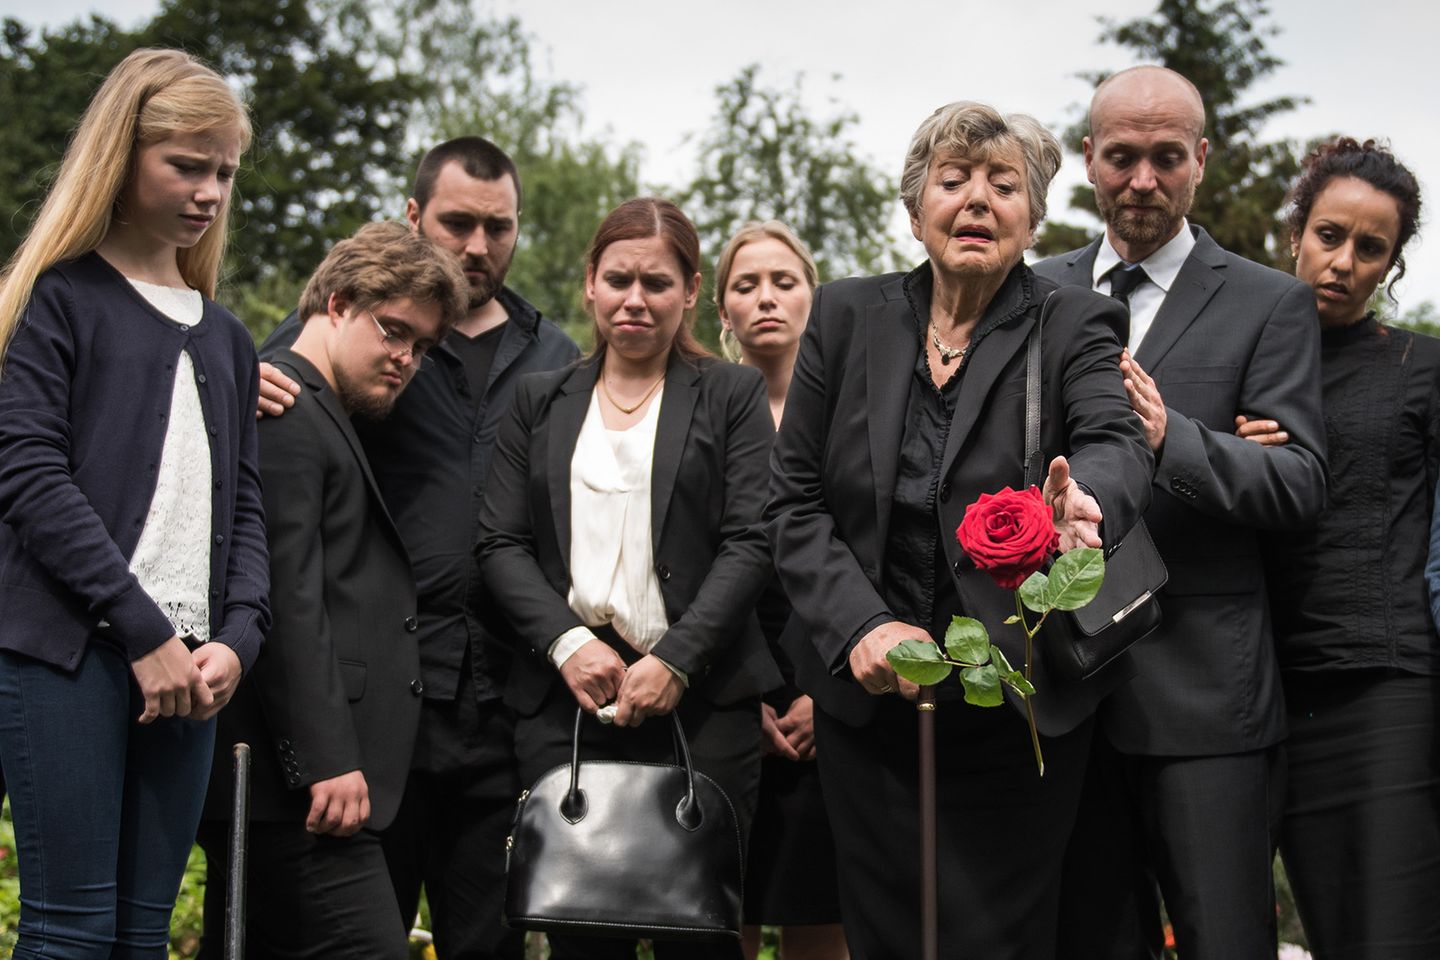 Am Sonntag (2. September) kullern Tränen: Hans Beimer stirbt den Serientod - und seine Familie und Freunde trauern